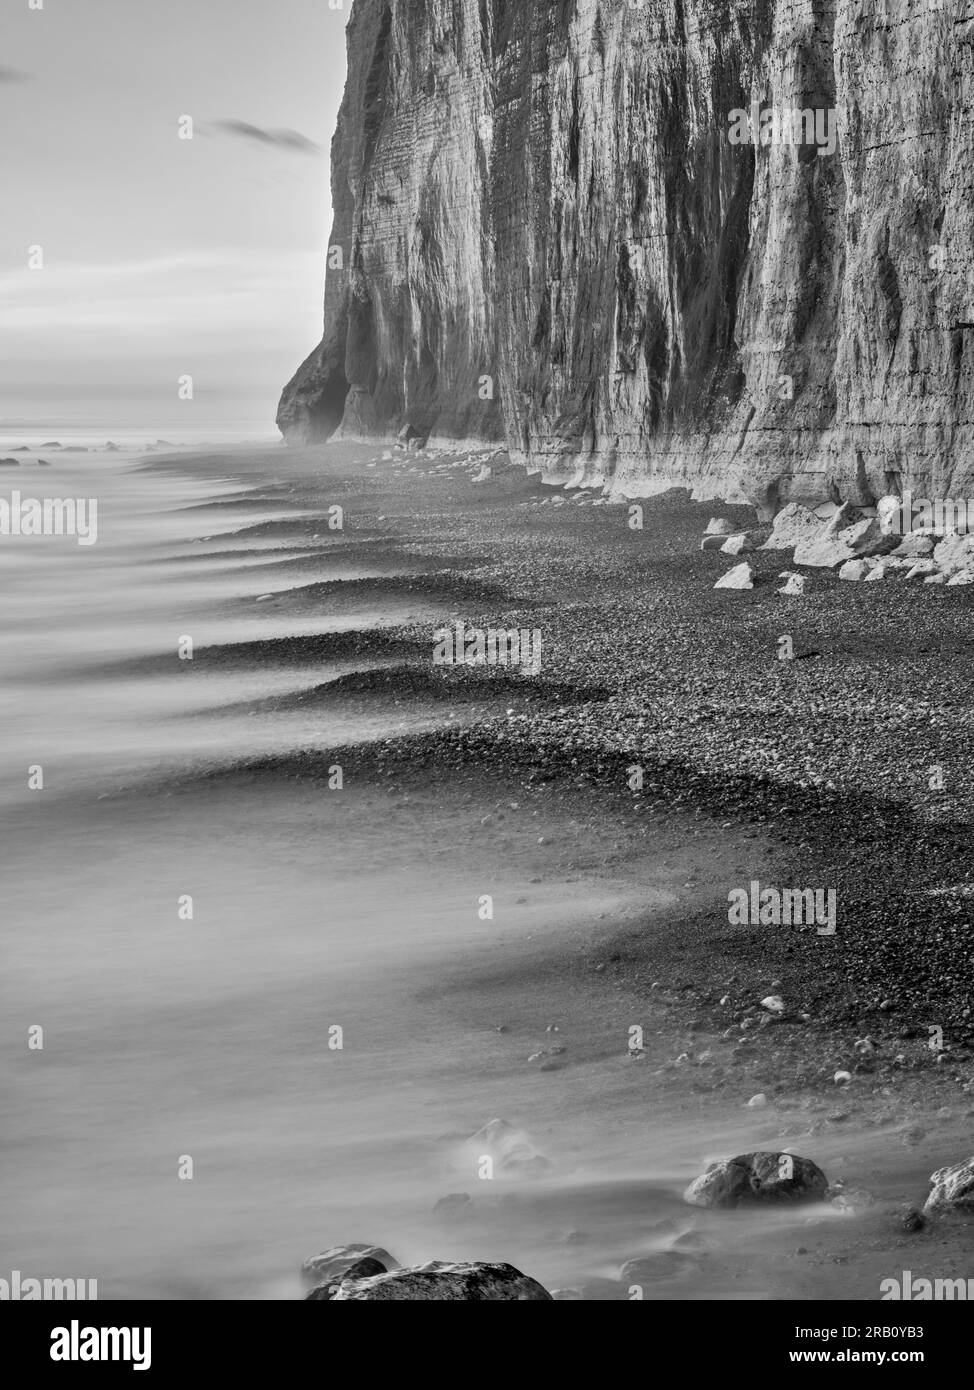 falaise, côte de craie, falaises de craie, à voir, vue, beauté pittoresque lieu pittoresque, impressionnisme, plage, pierre, plage de pierres, plage de pierres, falaise, mur de craie, surf, vague, eau Banque D'Images